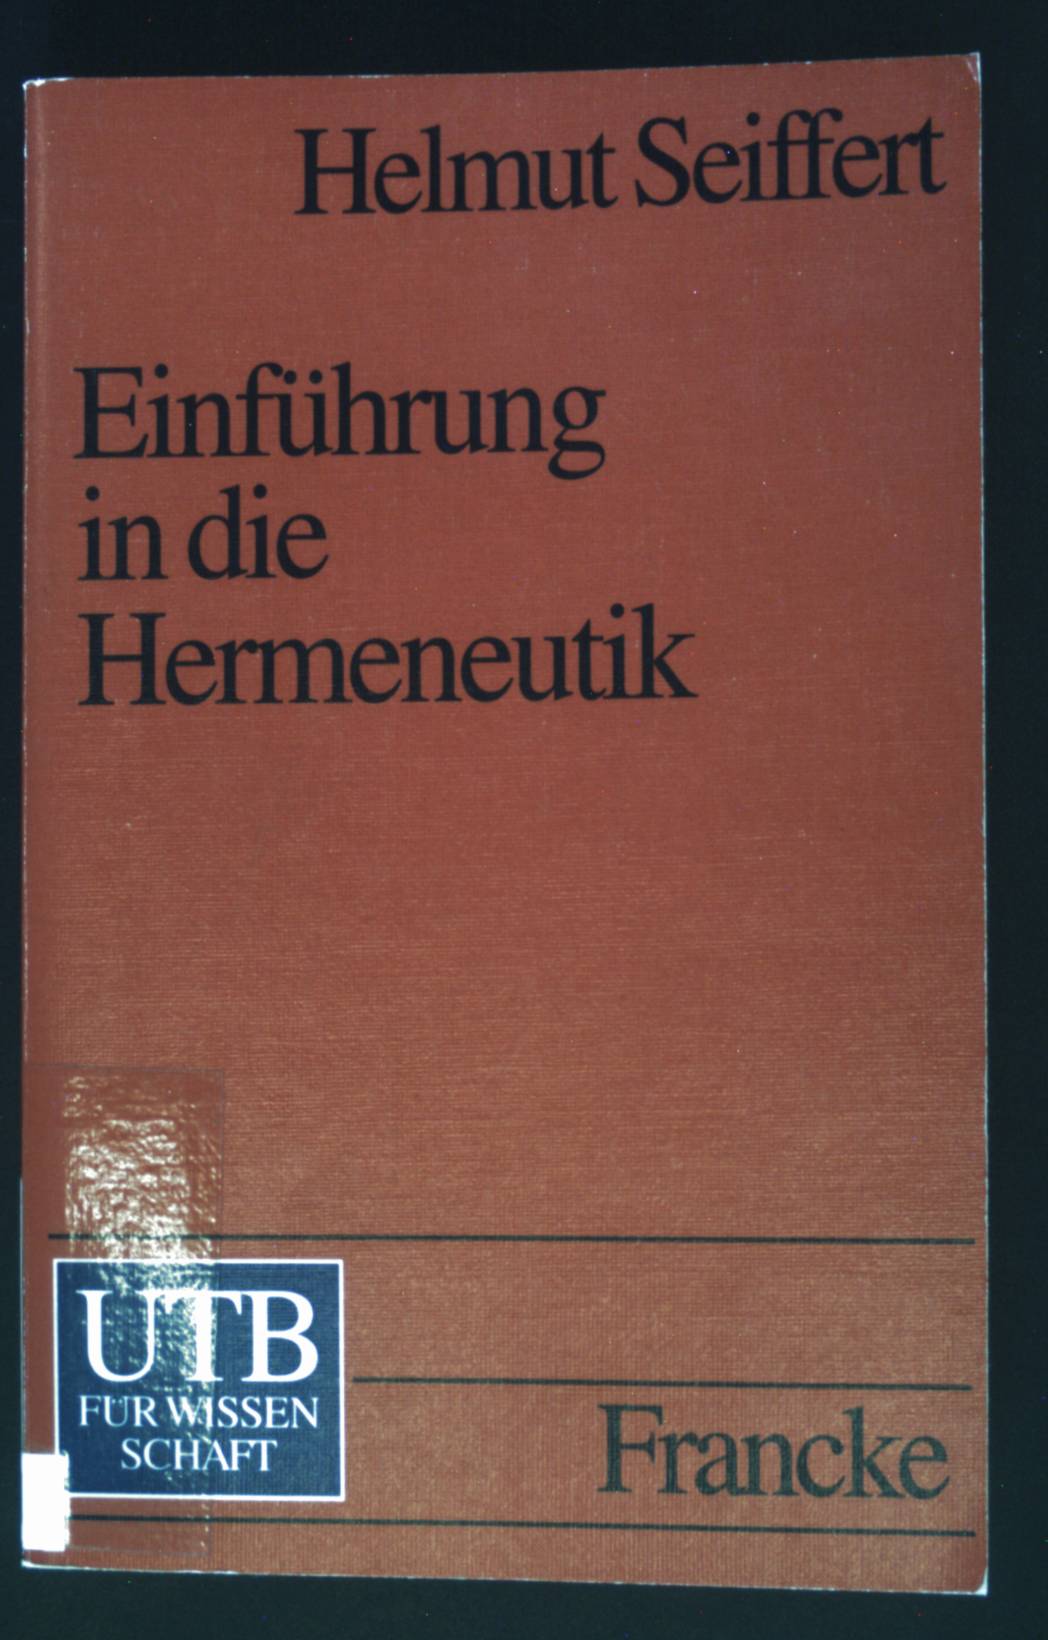 Einführung in die Hermeneutik : die Lehre von der Interpretation in den Fachwissenschaften. UTB ; 1666 - Seiffert, Helmut